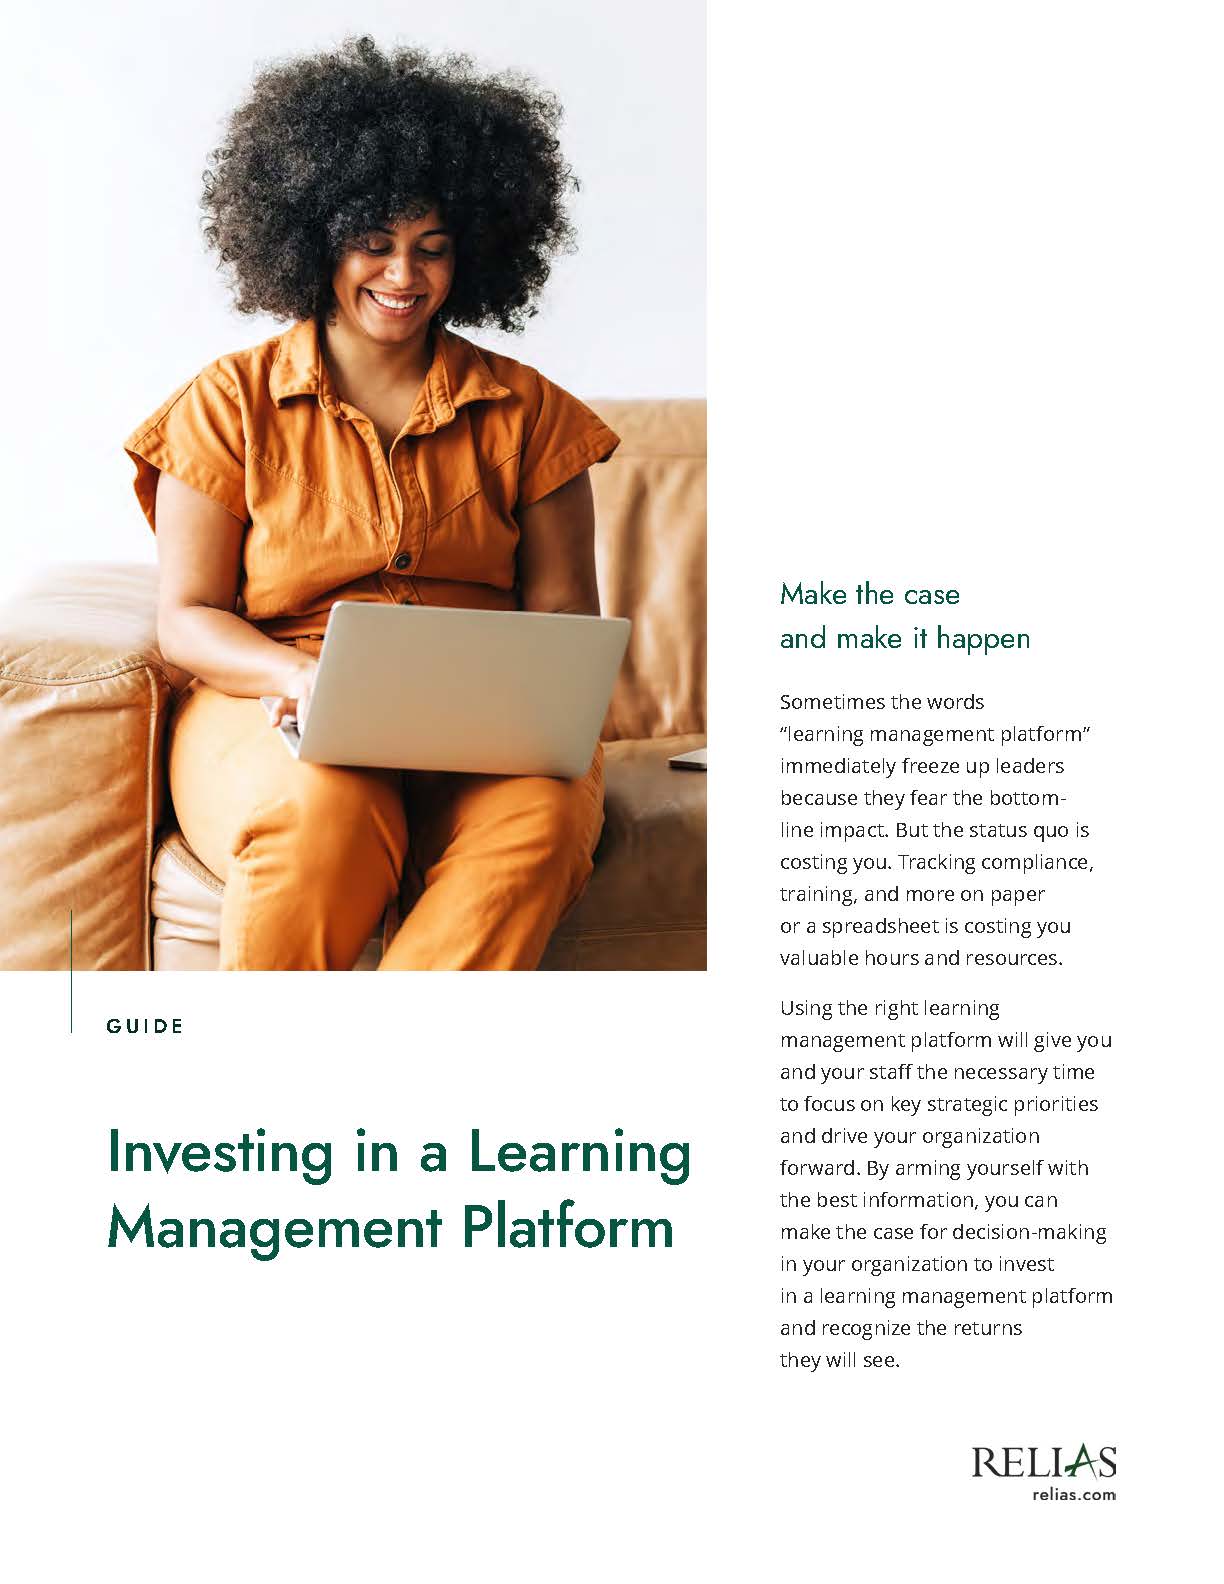 Learning management Platform